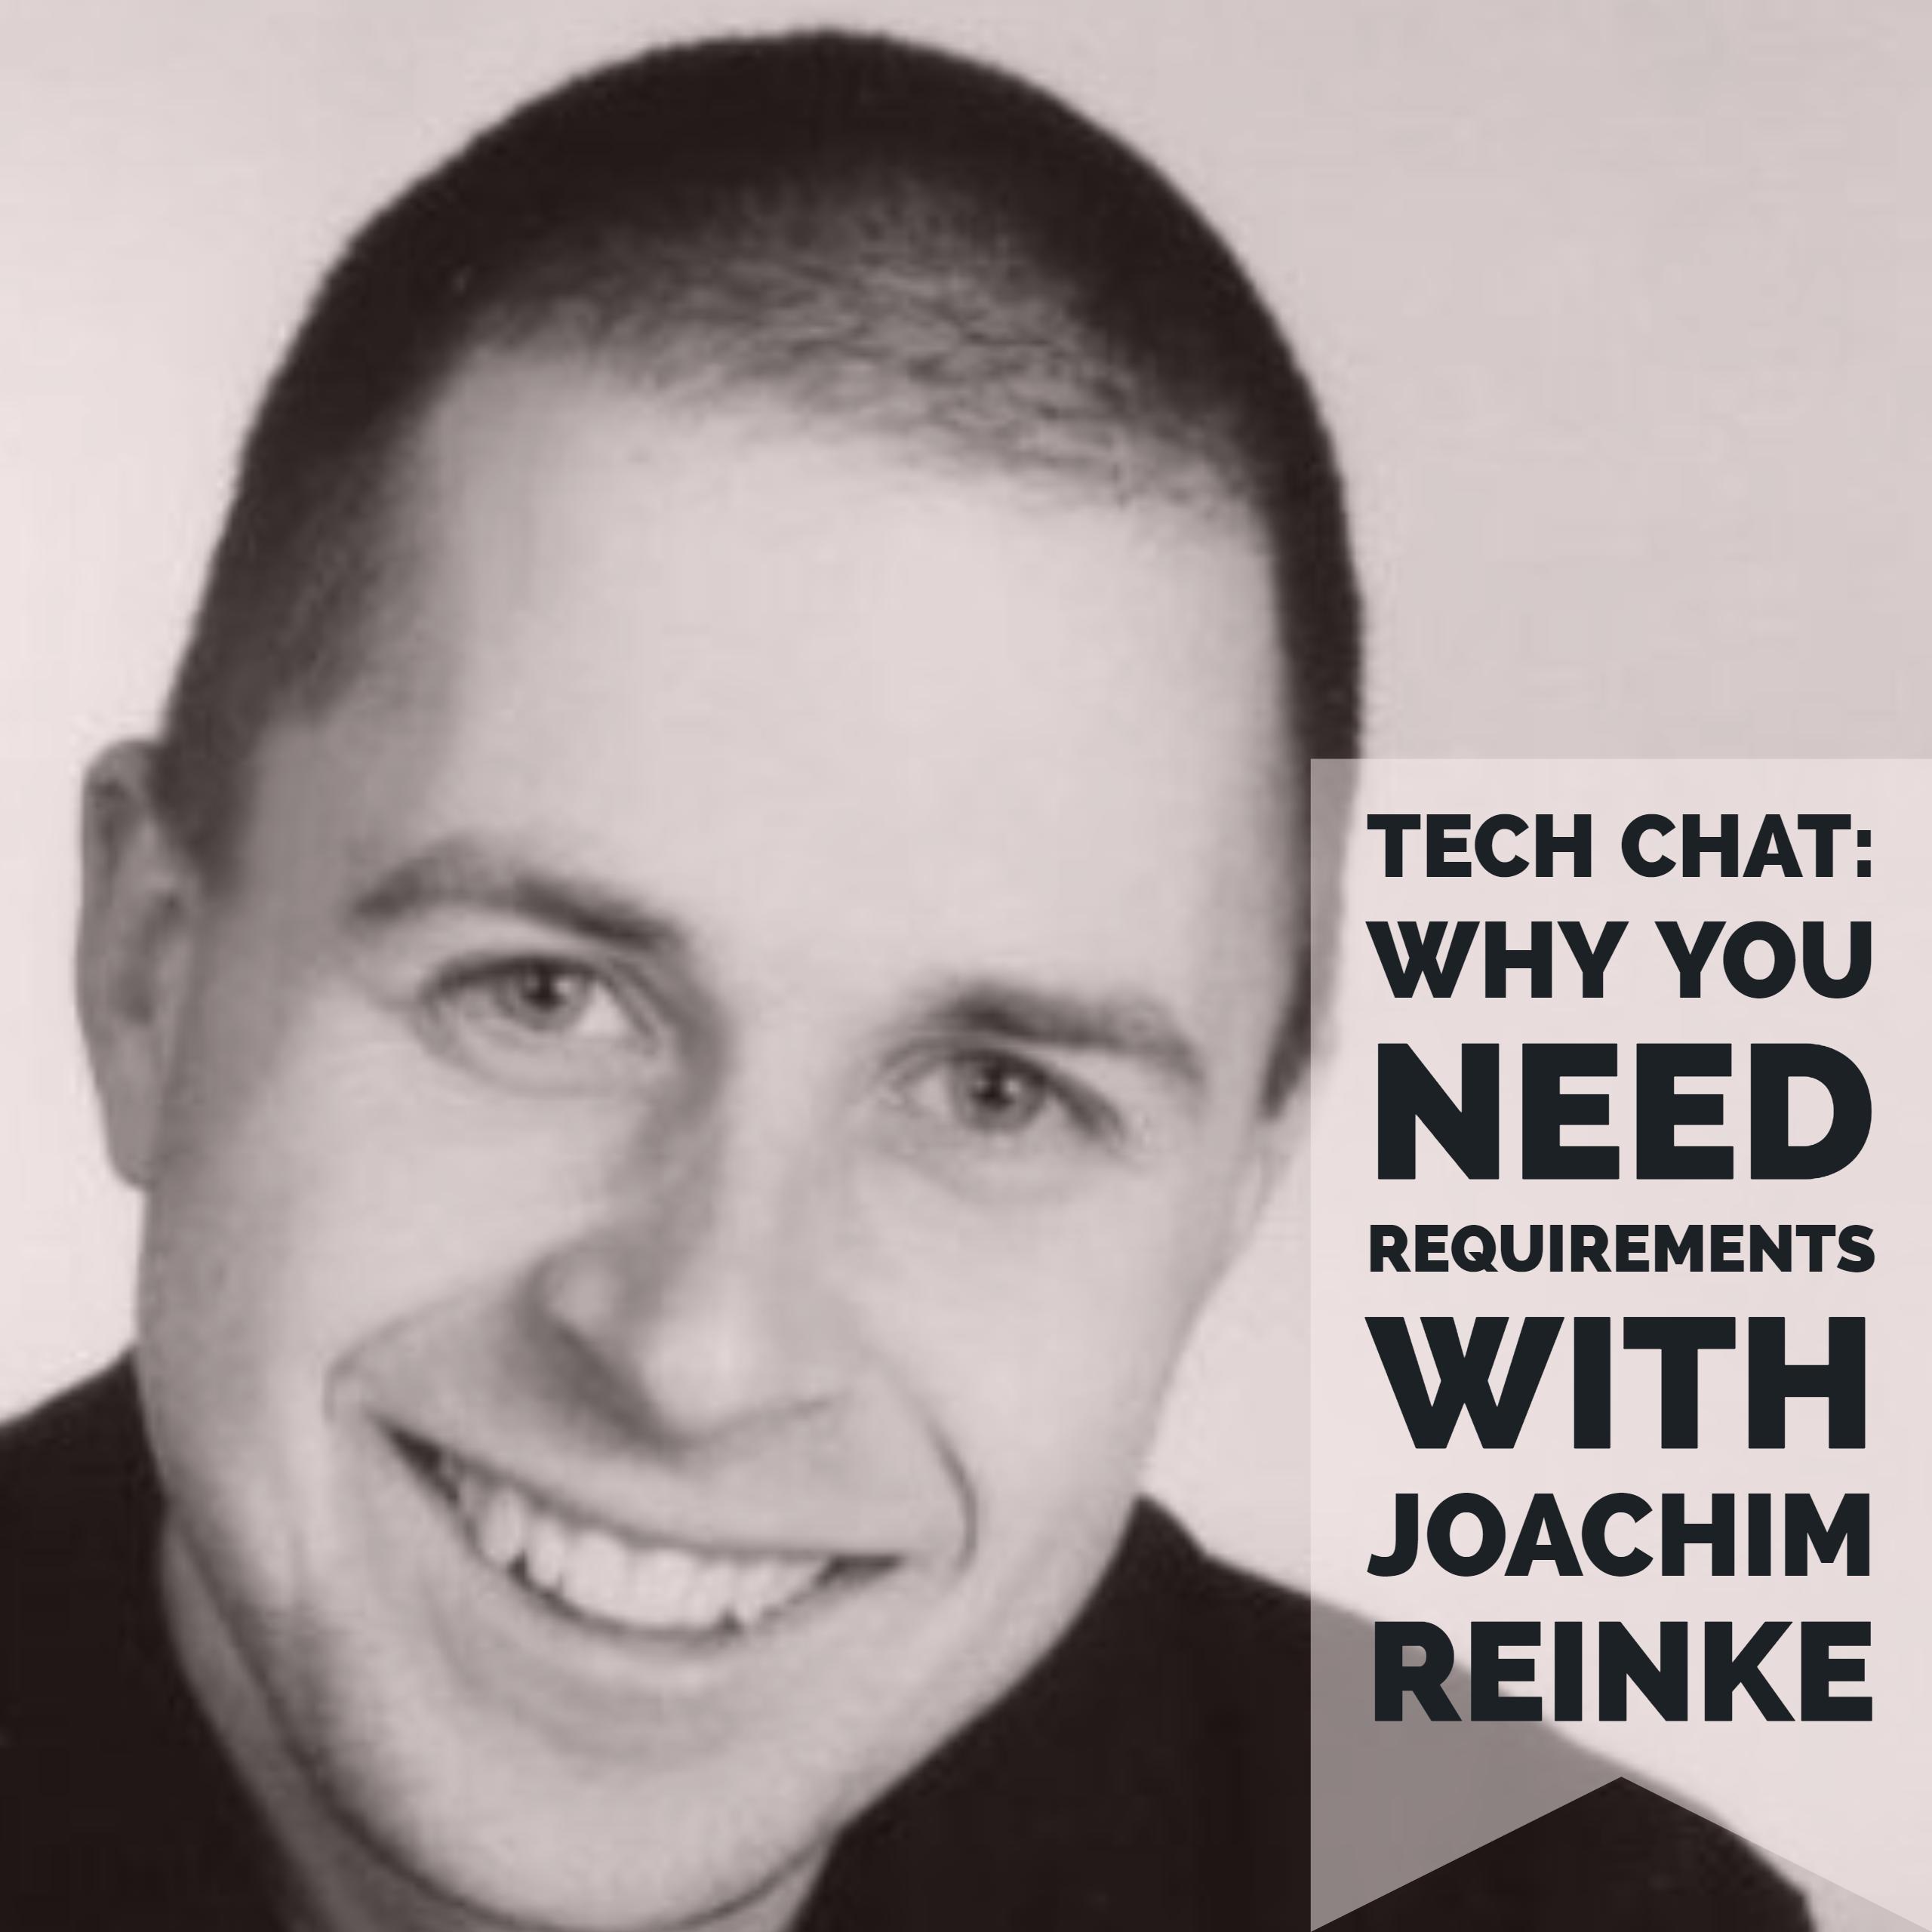 Joachim Reinke “